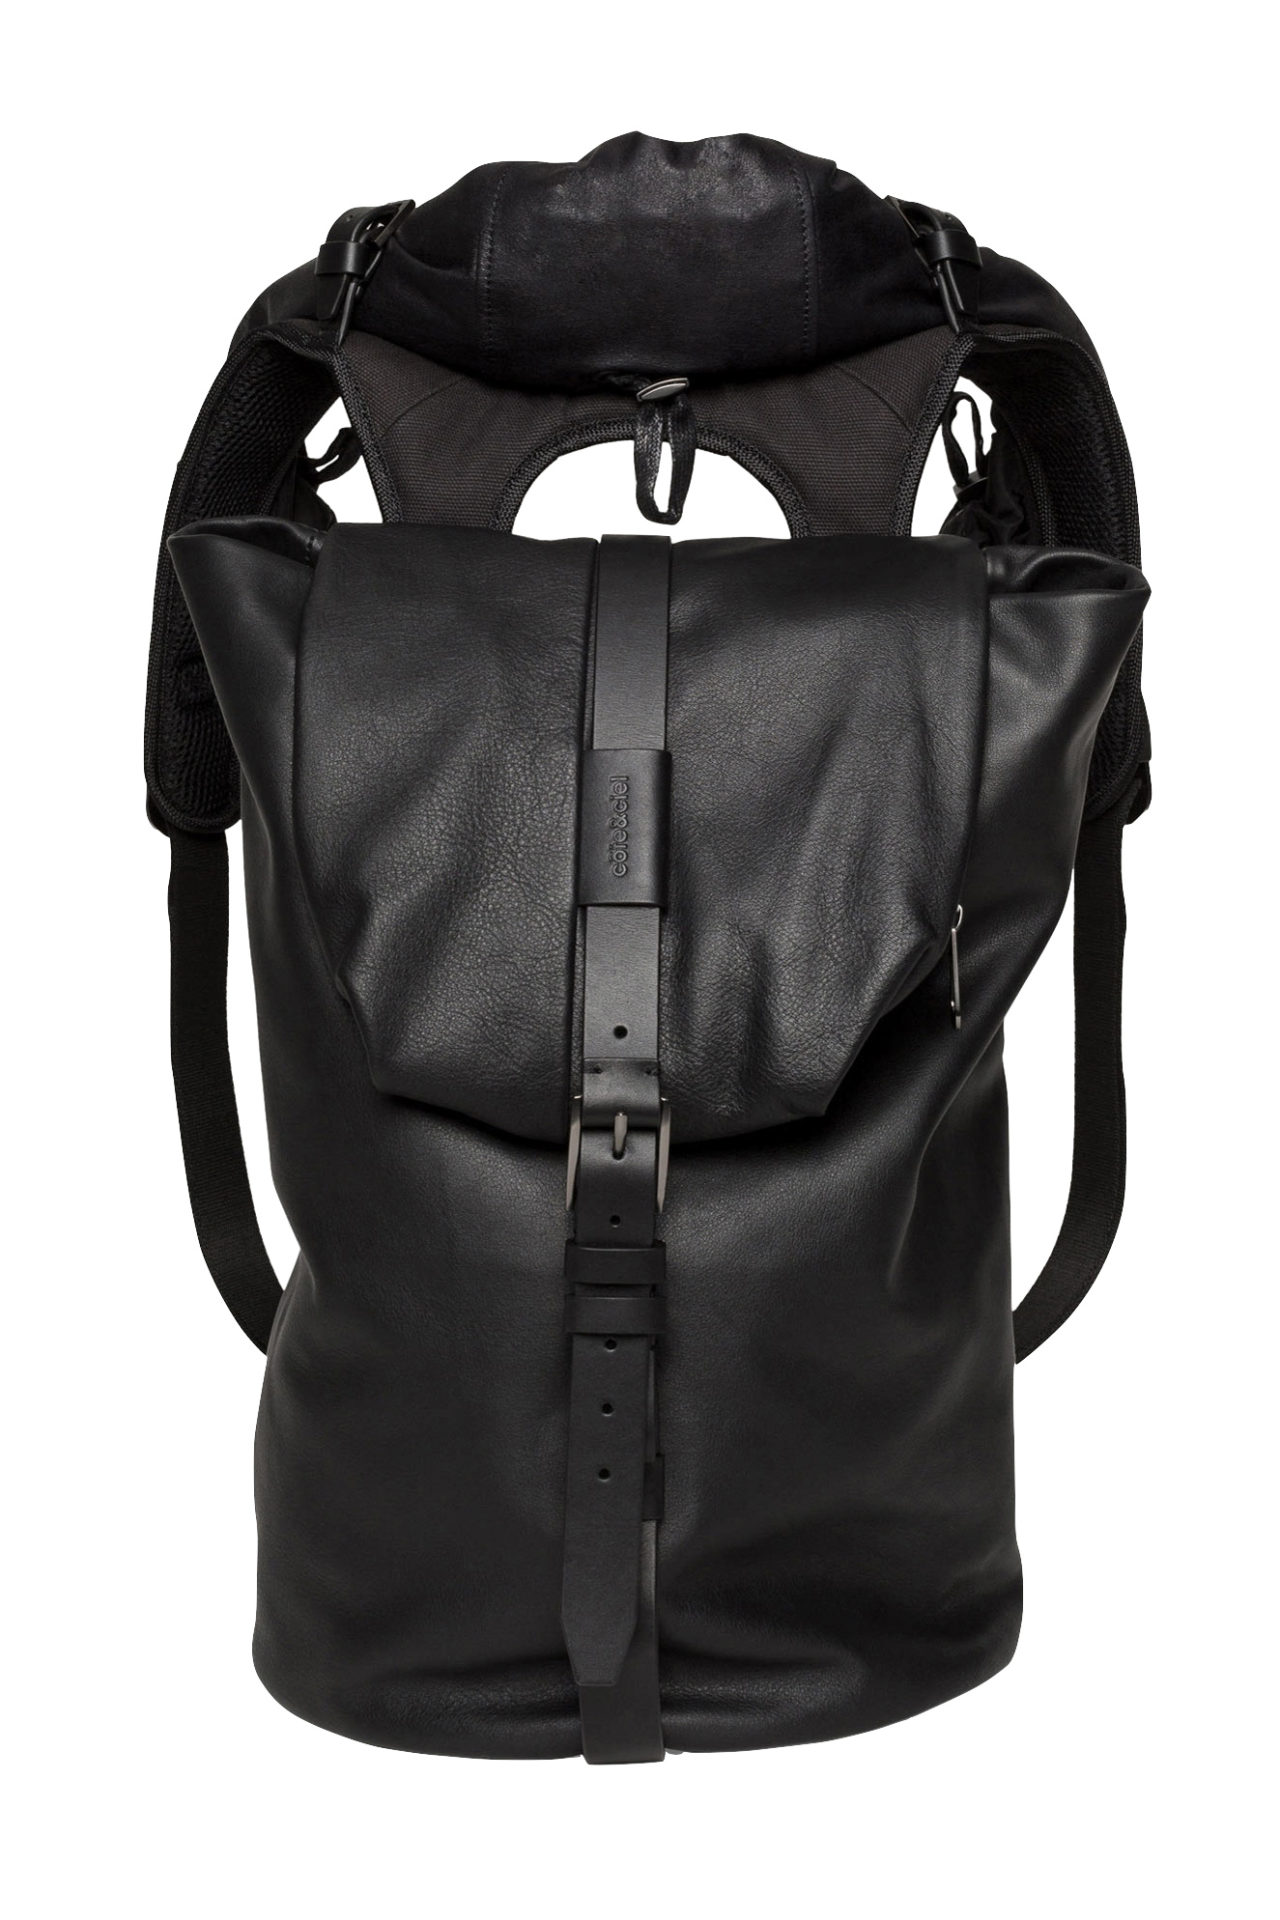 Cote & Ciel Backpack